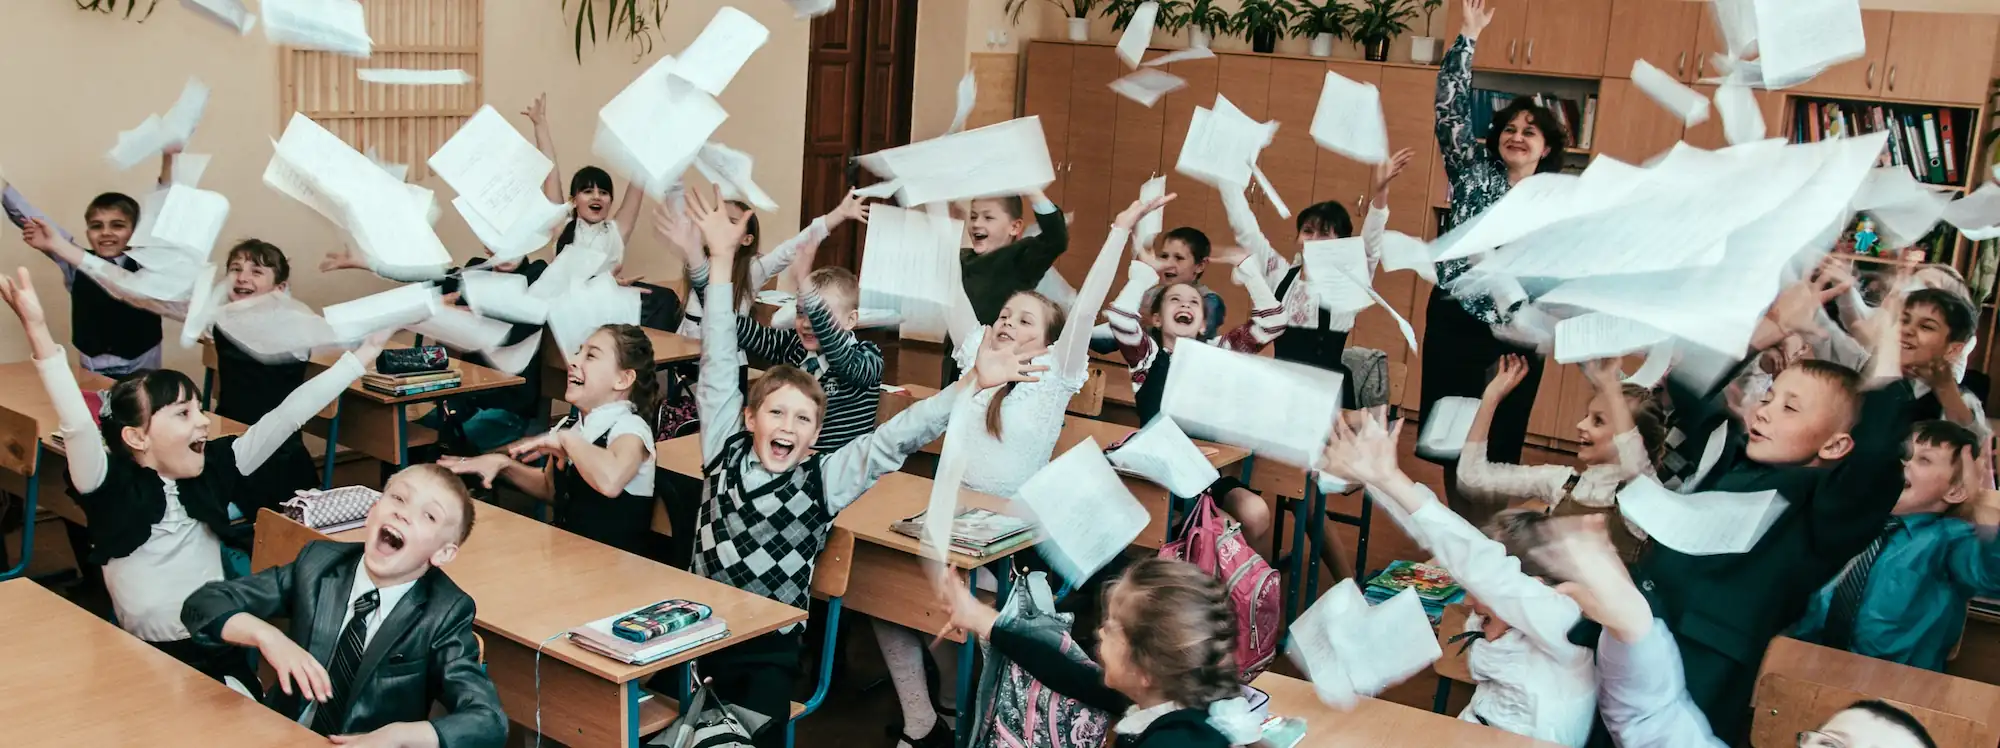 klaslokaal met papieren gooien 